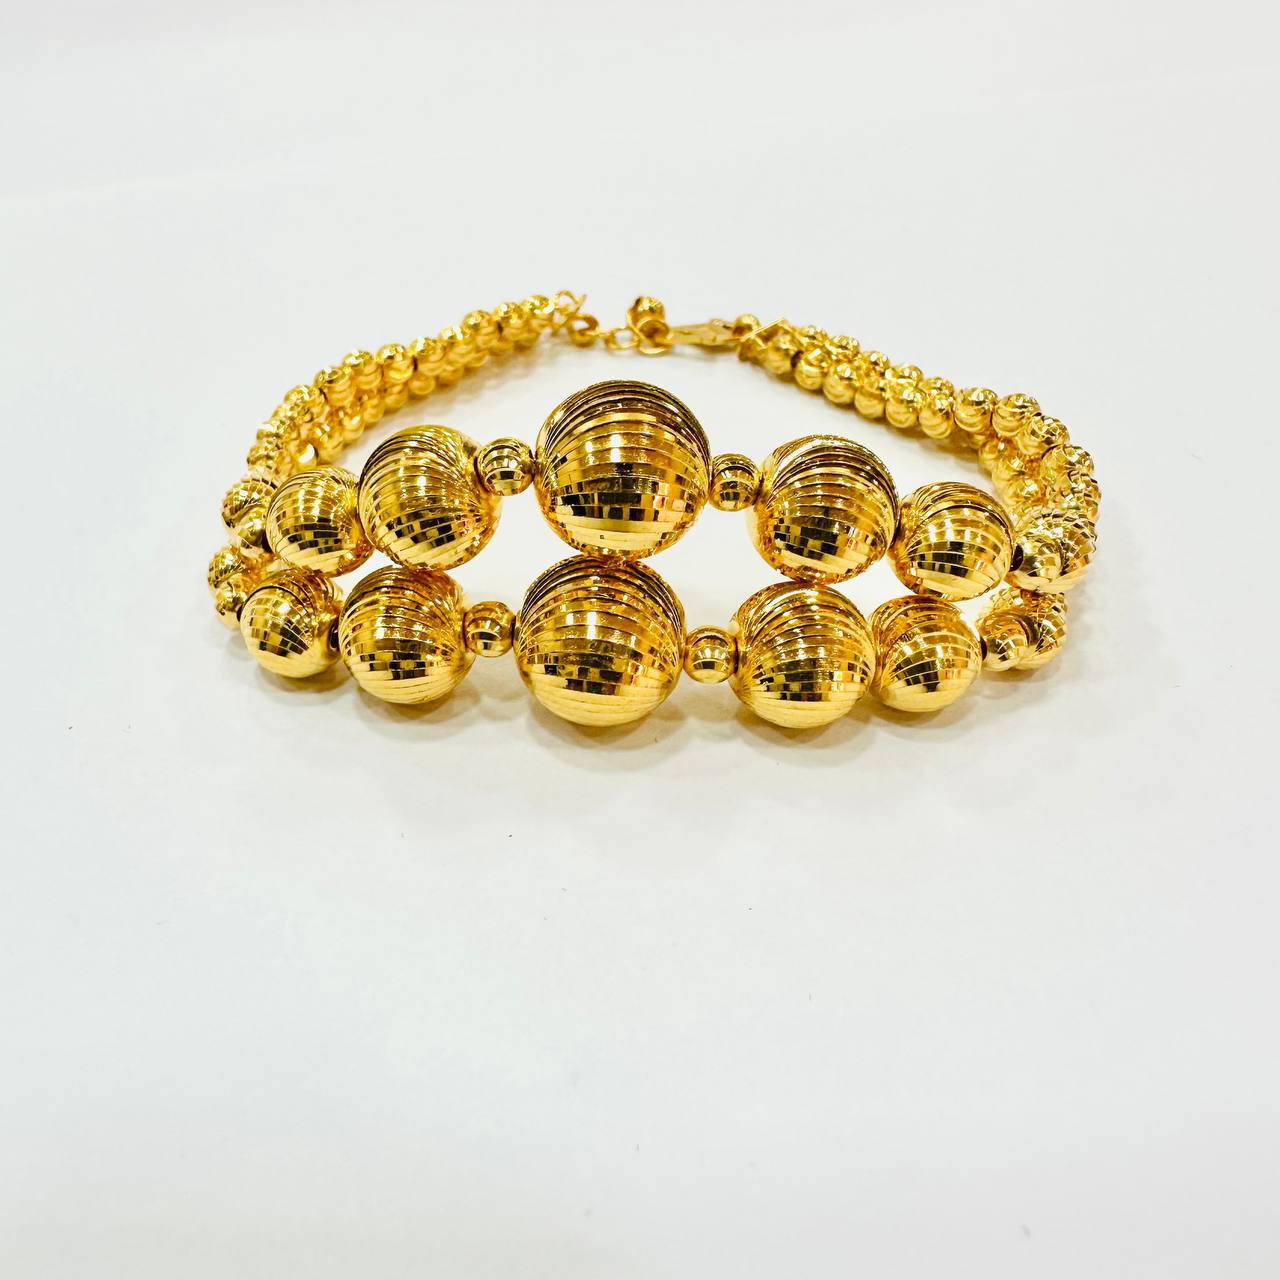 22k / 916 Gold Ball Bracelet V3-916 gold-Best Gold Shop